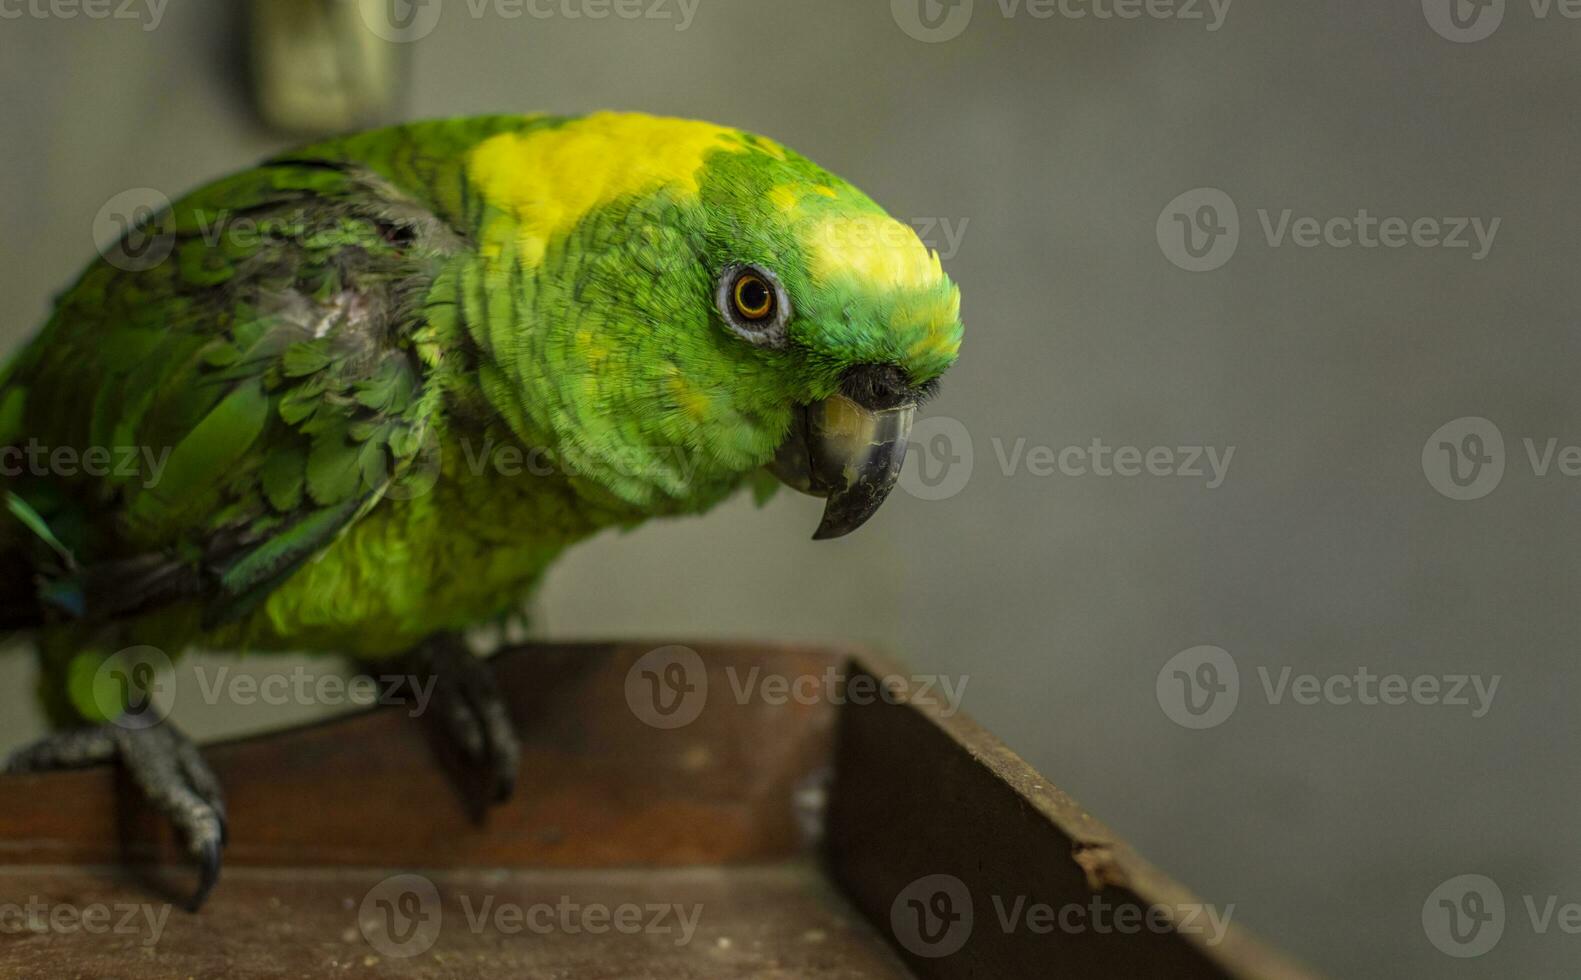 stänga upp av en grön befjädrad papegoja, stänga upp av grön papegoja öga med kopia Plats foto